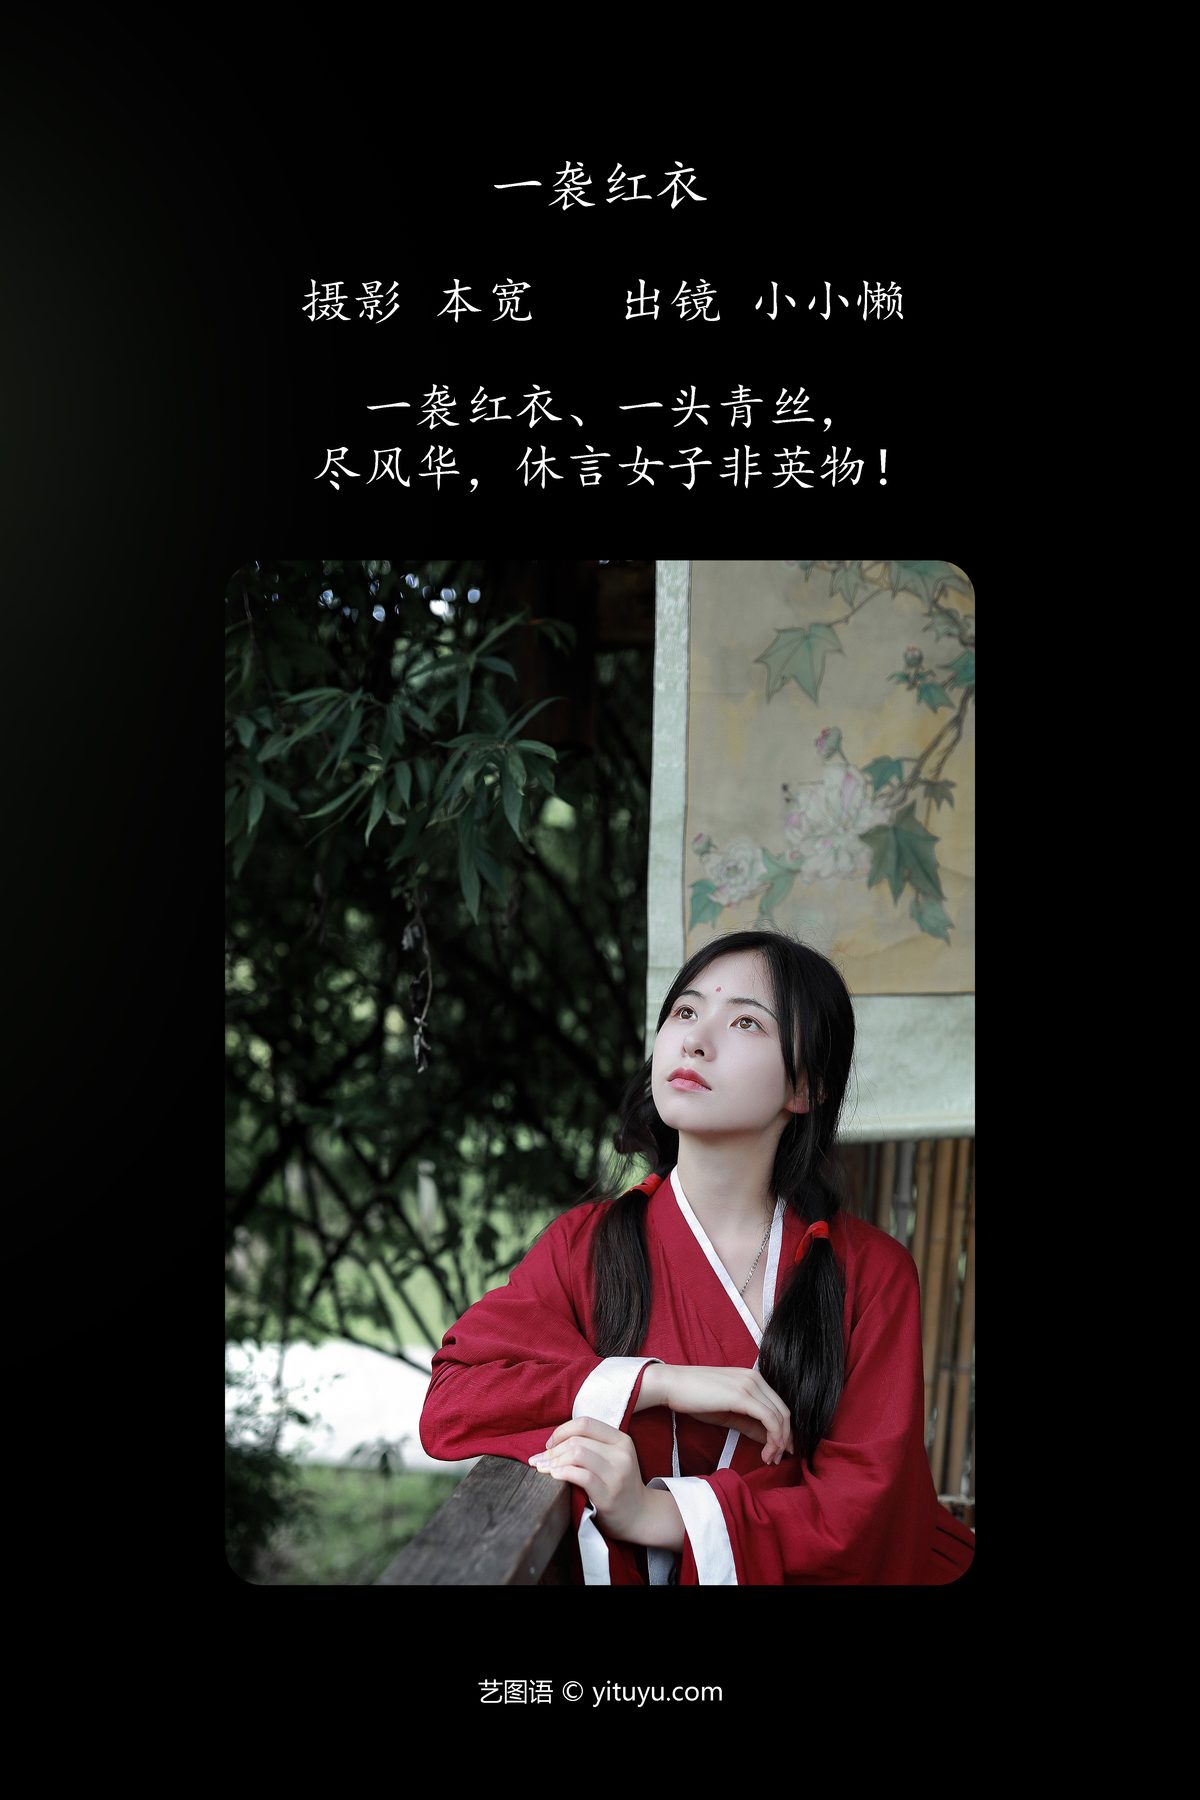 YiTuYu艺图语 Vol 5123 Xiao Xiao Lan 0001 5216180838.jpg